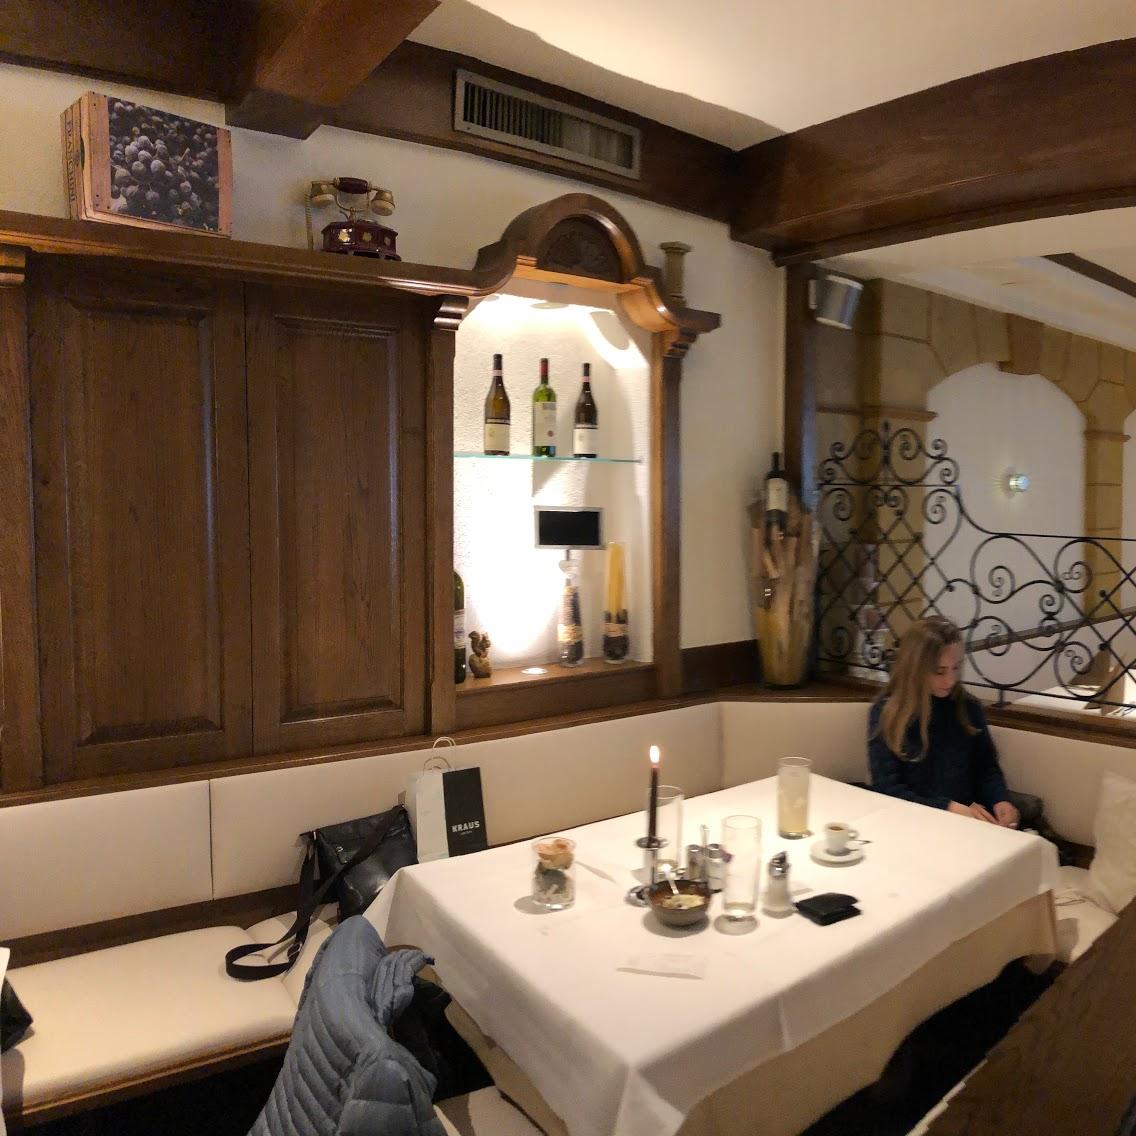 Restaurant "Trattoria Dal Vecchio Inh. Guiseppe De Matteis" in Erding